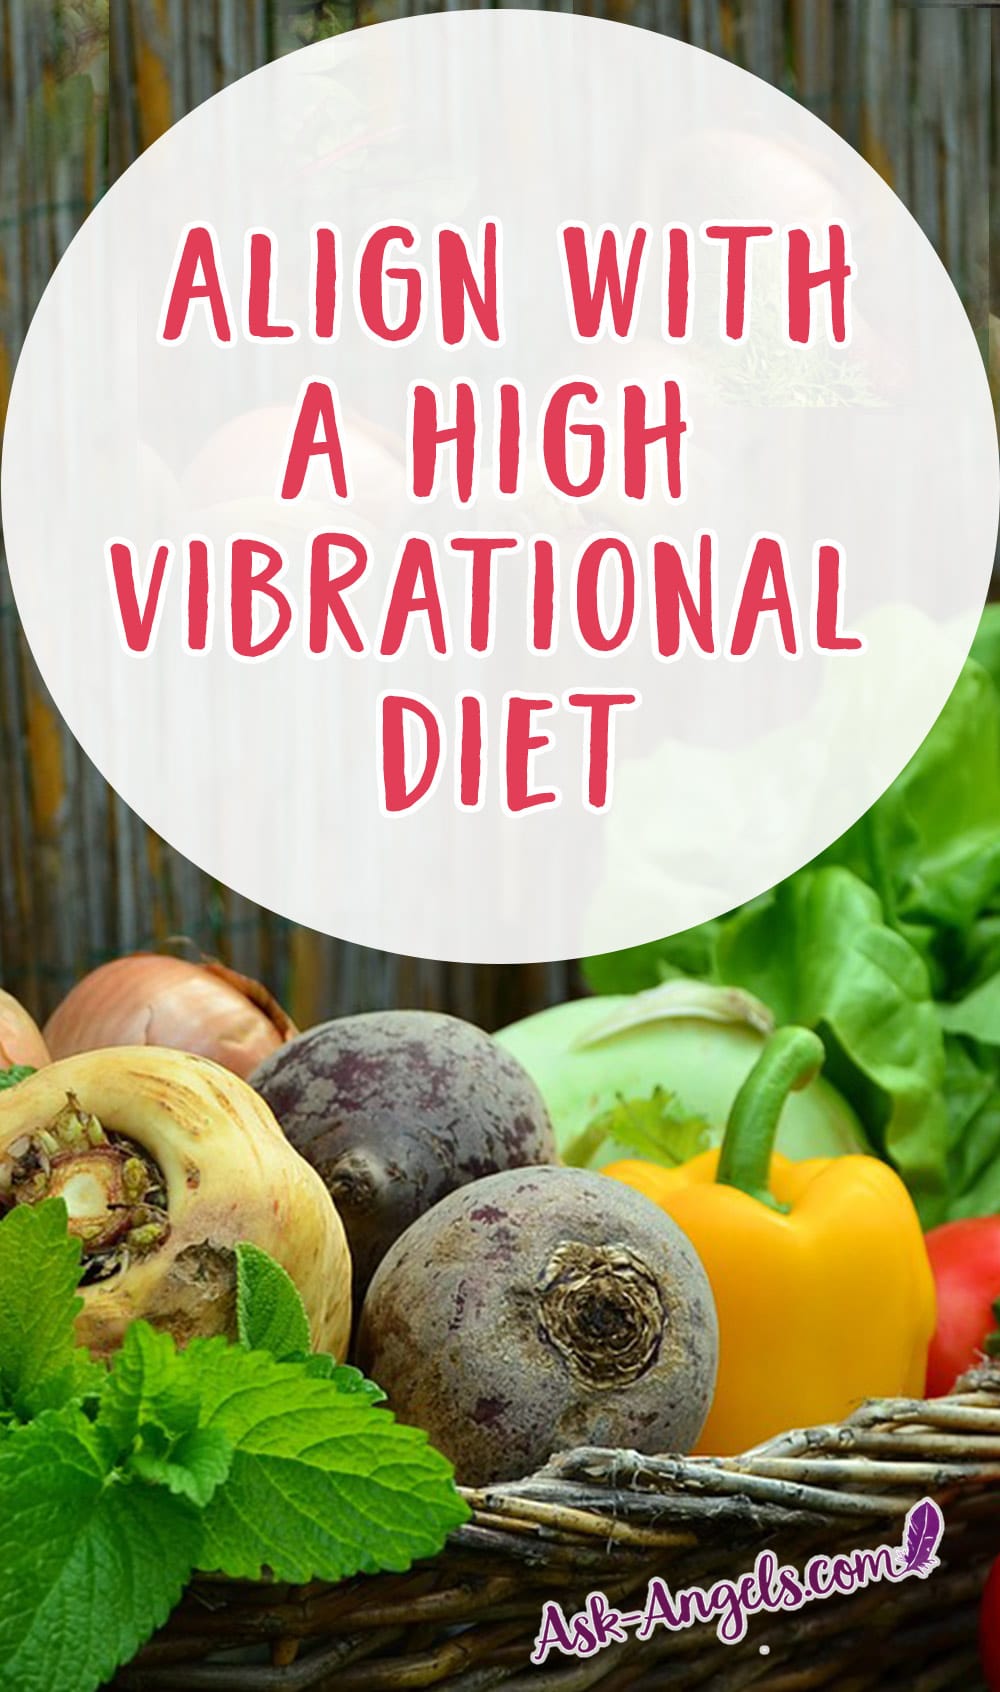 High Vibrational Diet